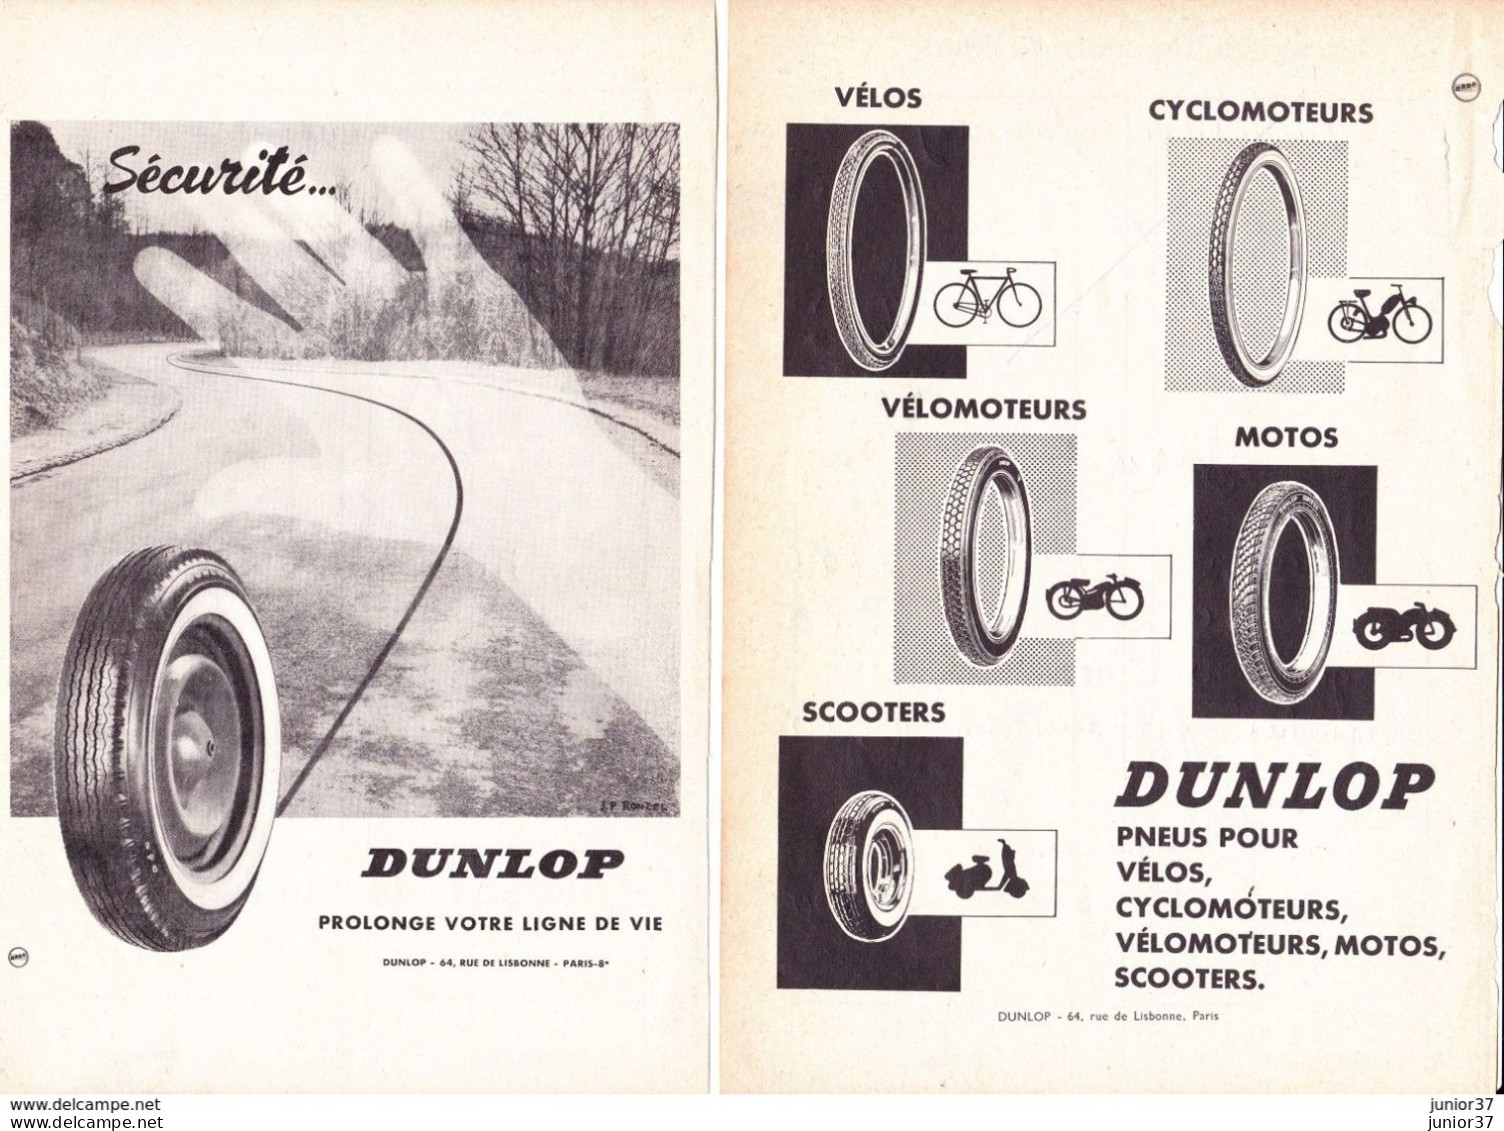 4 Feuillets D'agenda, Dunlop, Pneus Pour Vélos, Cyclomoteurs, Motos..... - Voitures